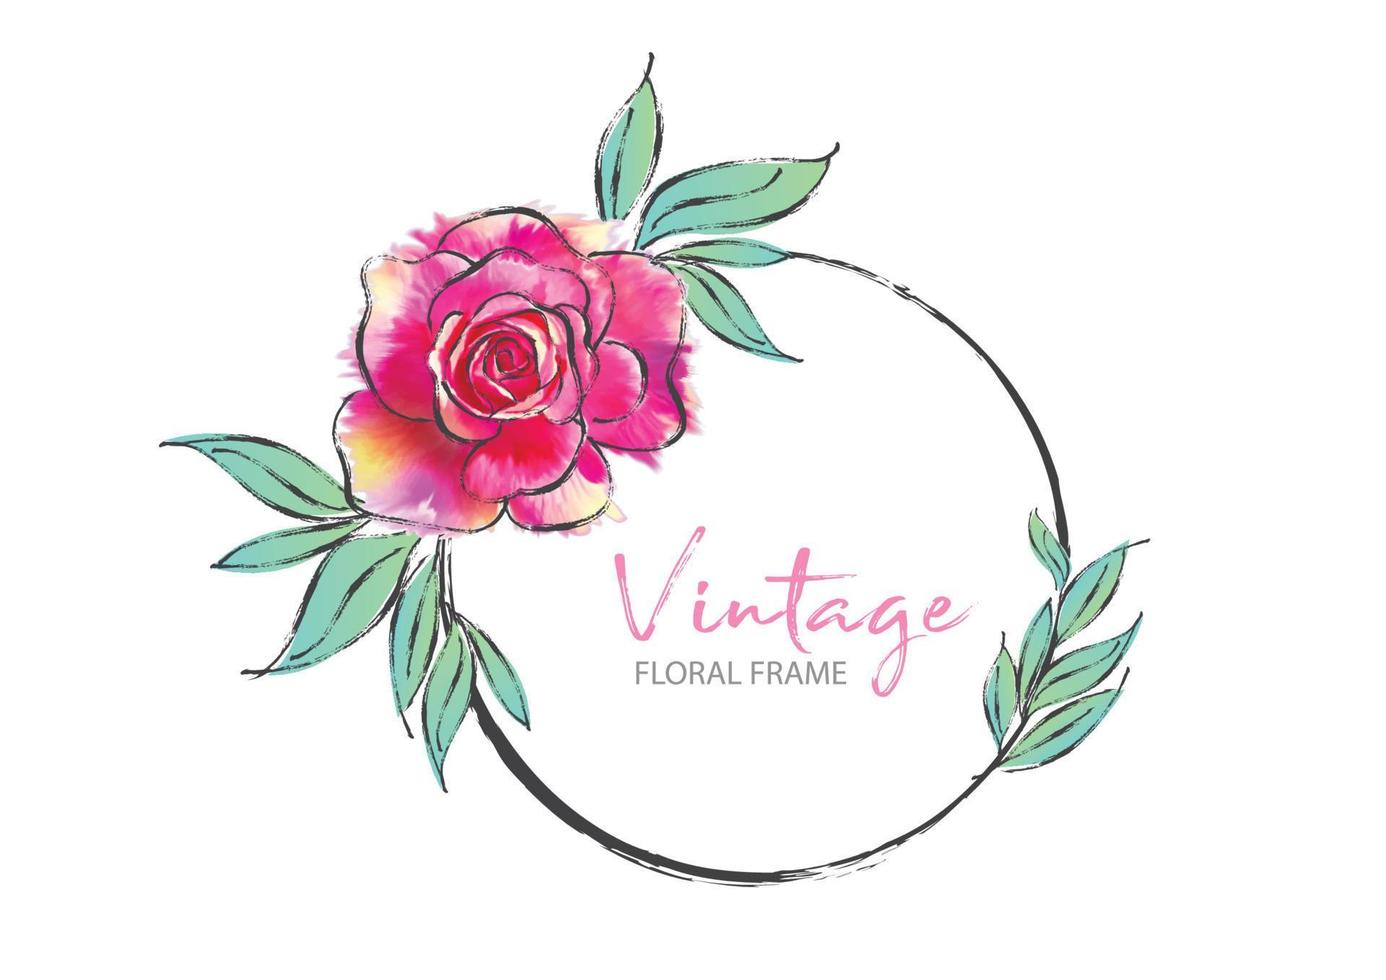 cadre rond vintage avec illustration vectorielle rose rose peut être utilisé pour l'invitation, le mariage, les cartes de voeux, le cadre floral, la peinture rose vecteur